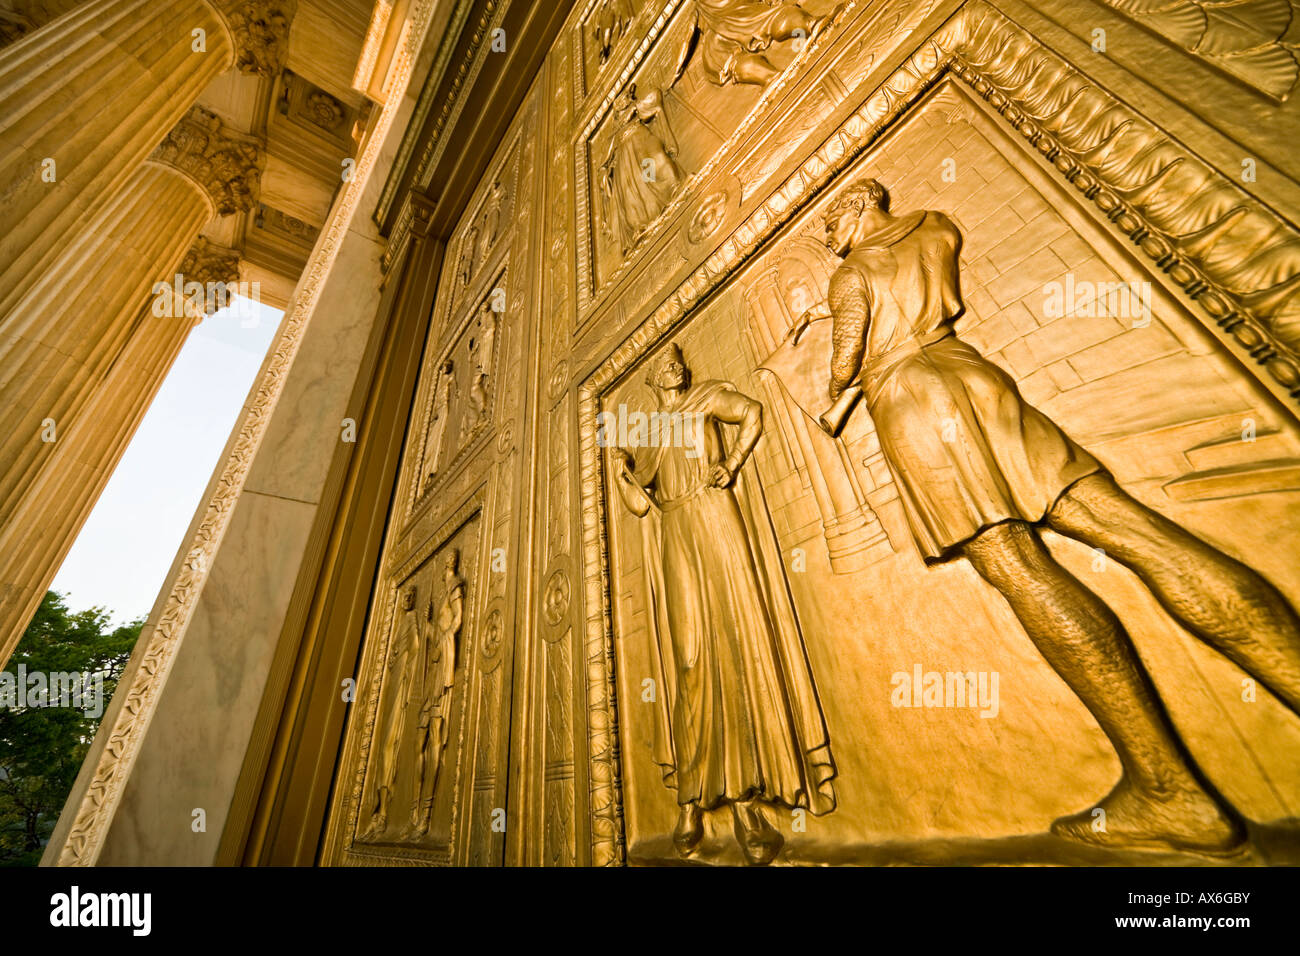 Las puertas de bronce de la Corte Suprema de los Estados Unidos representando escenas históricas principales de la reforma jurídica. El Estatuto de Westminster. Foto de stock